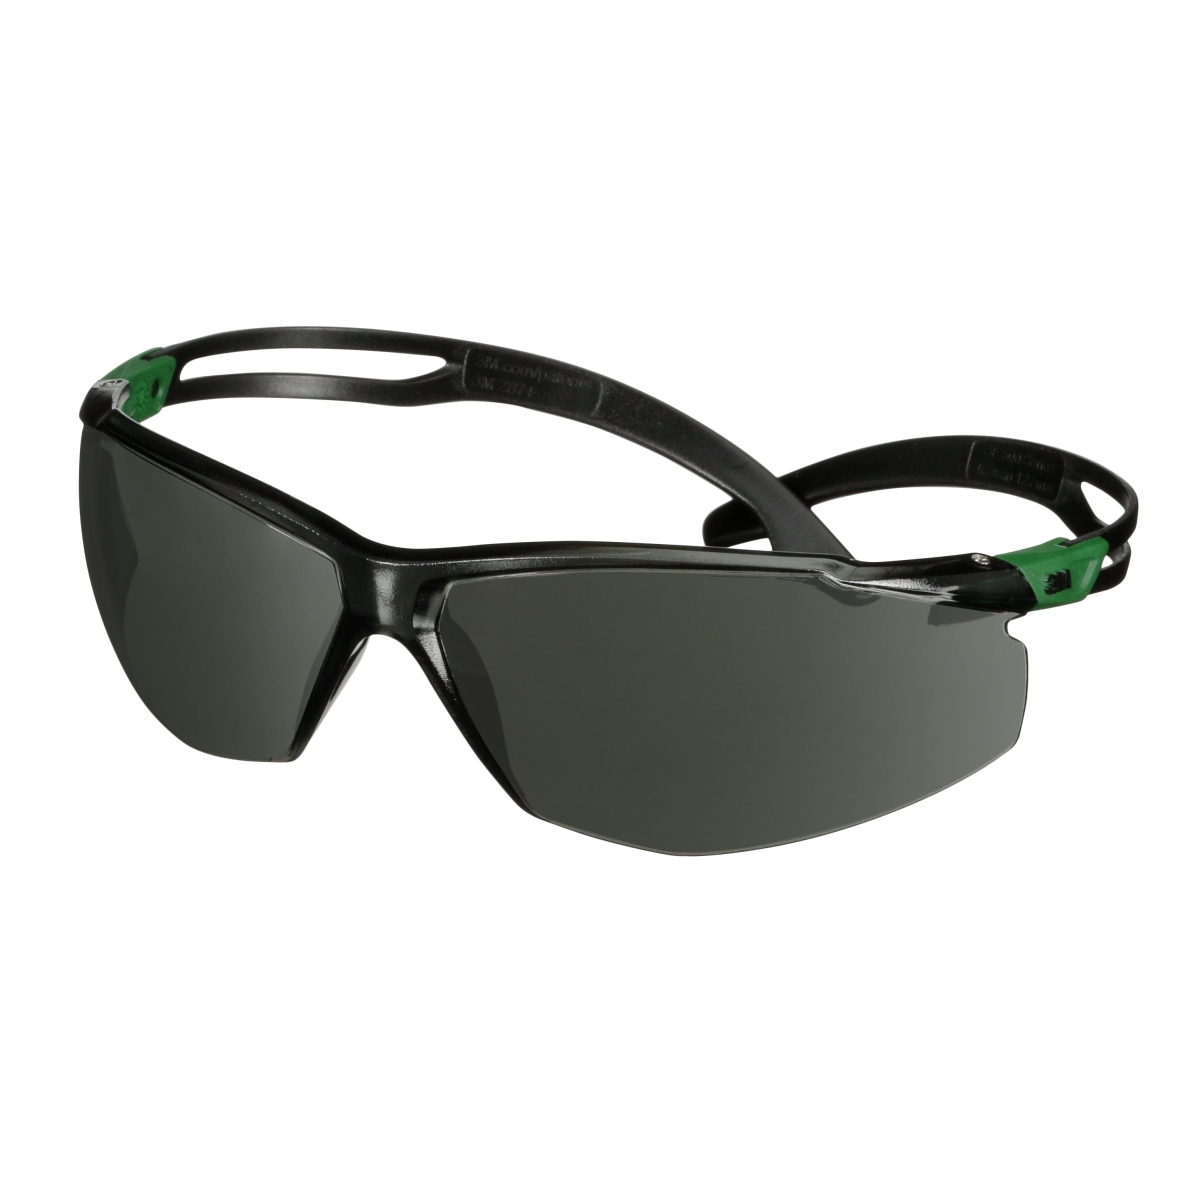 3M Gafas de protección SecureFit 500, patillas negras/verdes, tratamiento antirrayas+ (K), lente gris con nivel de protección IR 3.0, SF530ASP-GRN